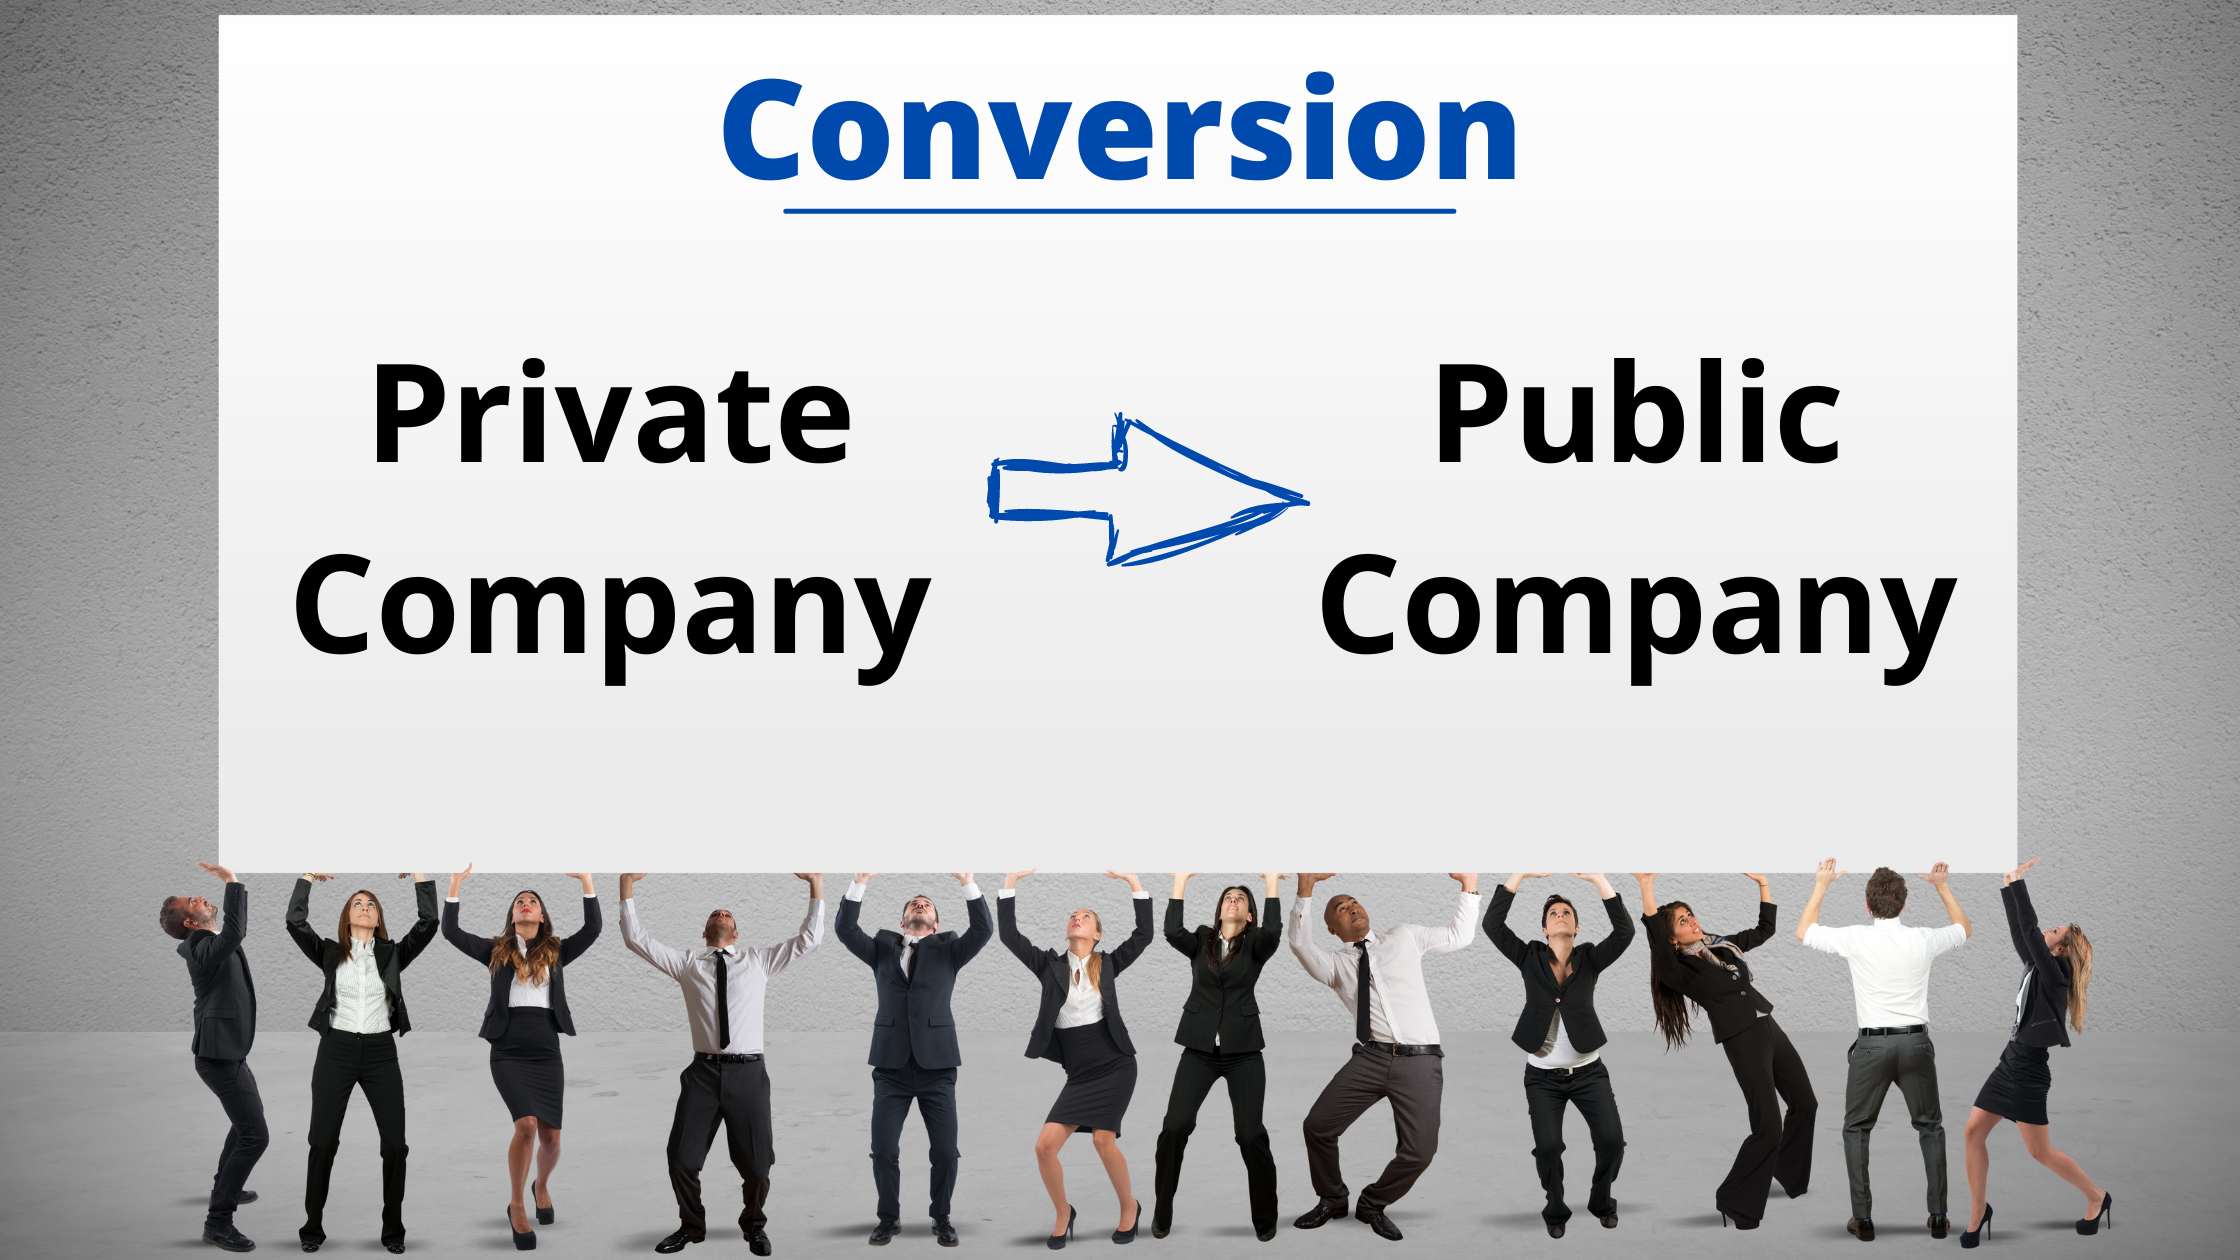 Conversion: Private Company to Public Company